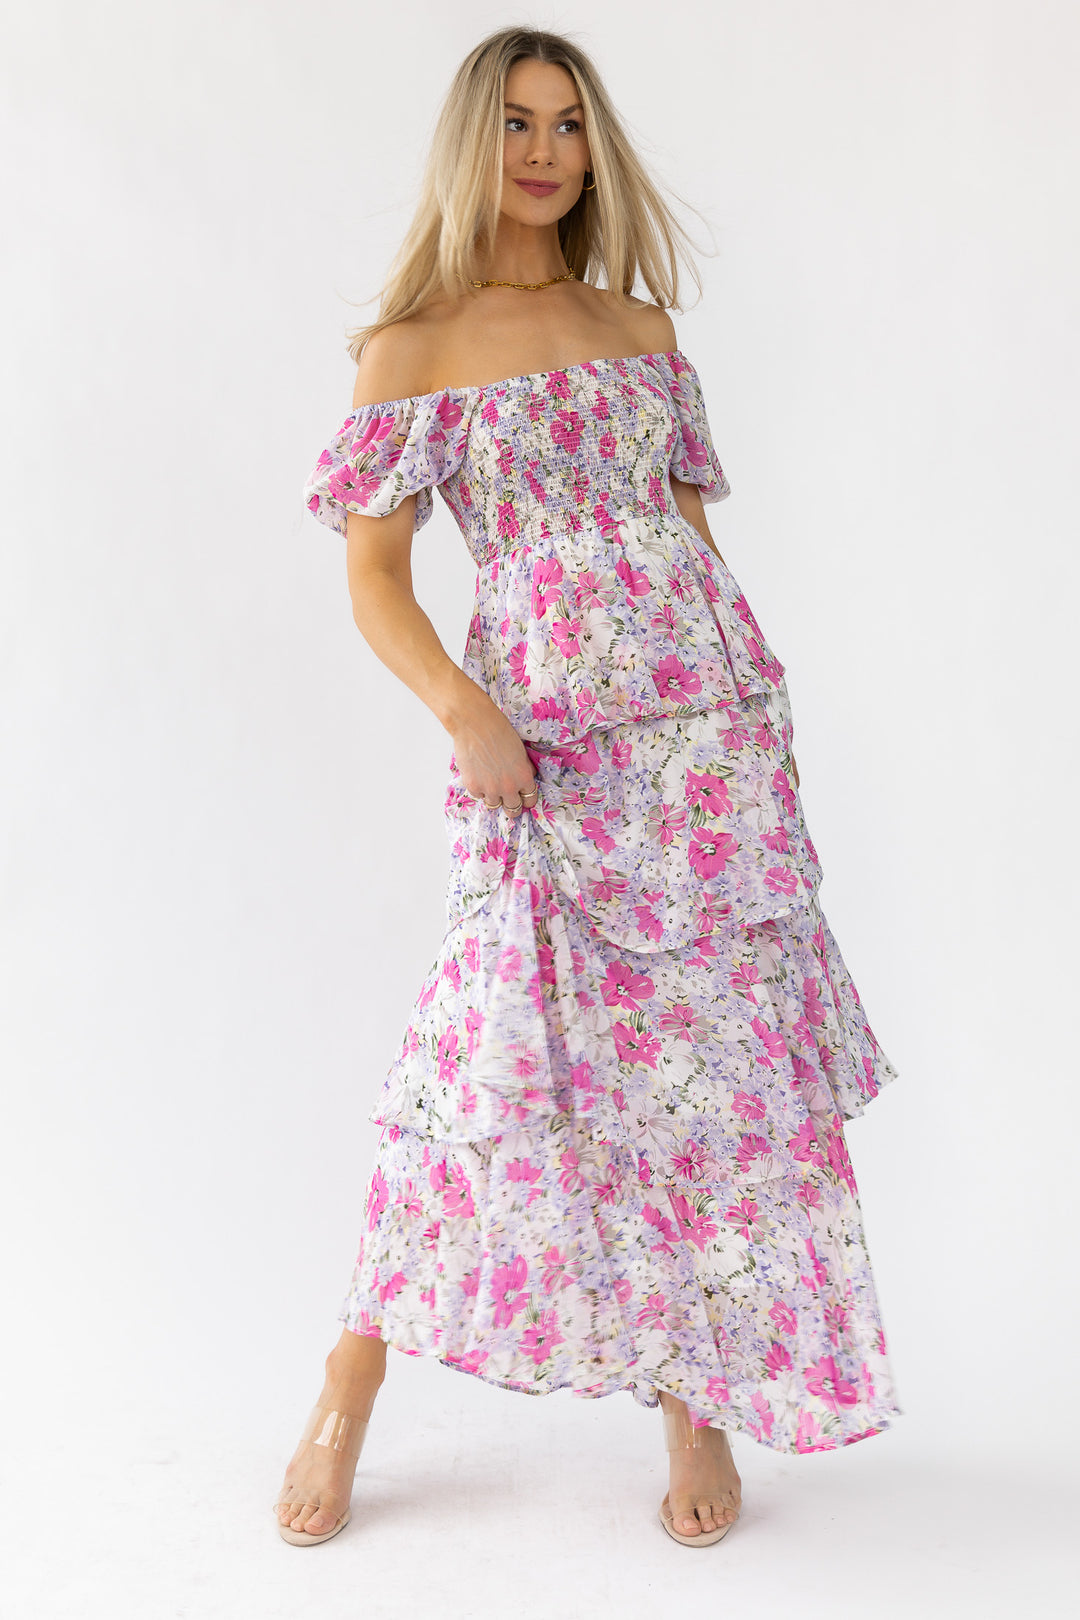 Garden Goddess Pink Floral Maxi Dress